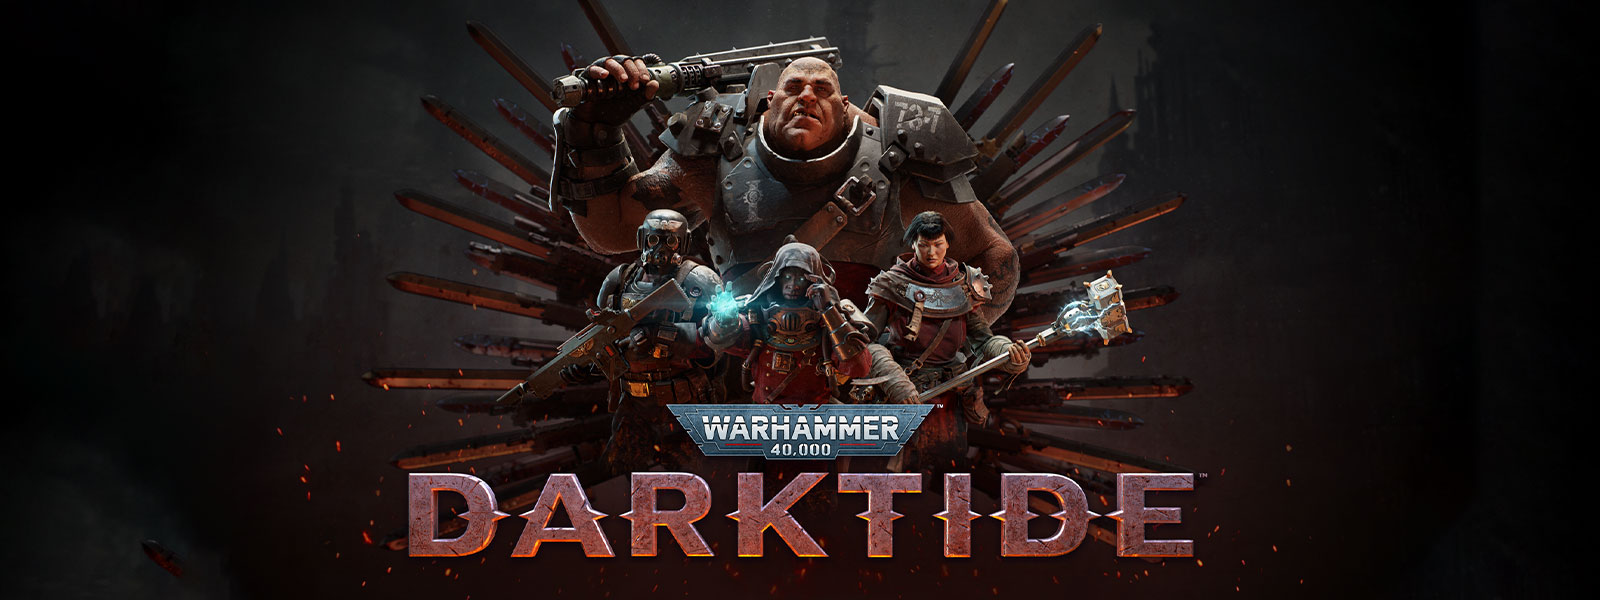 Warhammer 40,000: Darktide, Un escuadrón de personajes con armadura posa delante de un motivo de cuchilla.